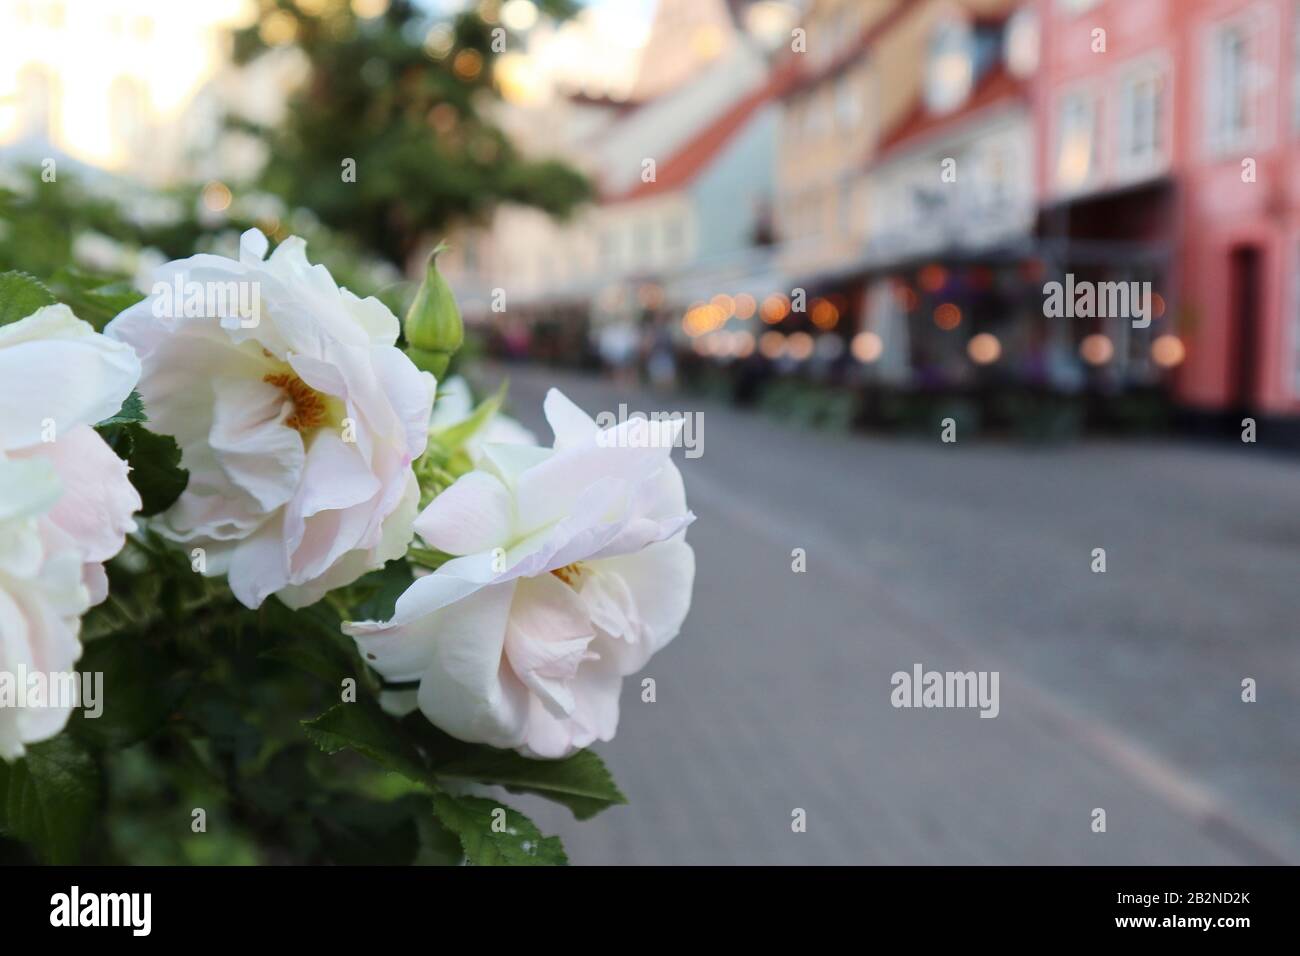 Rosa bianco fiori rose nel centro storico di riga Lettonia. L'Europa viaggia con bei vecchi edifici Street cafe. Macro primo piano con luci serali Foto Stock